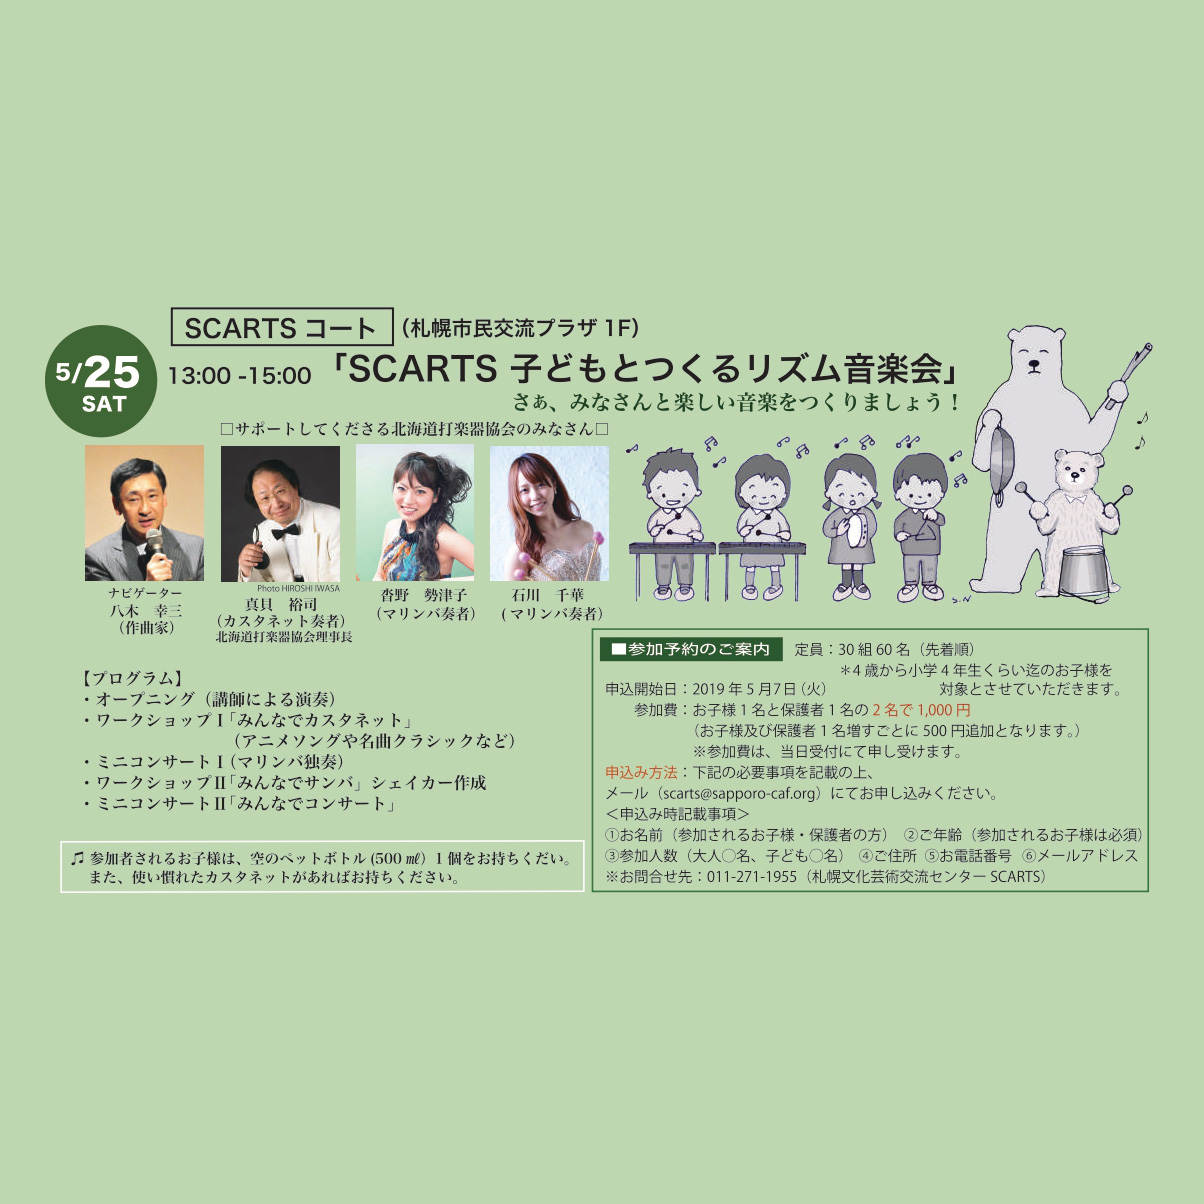 アートボランティアウィーク Scarts Scarts 子どもとつくるリズム音楽会 イベント情報 札幌市民交流プラザ